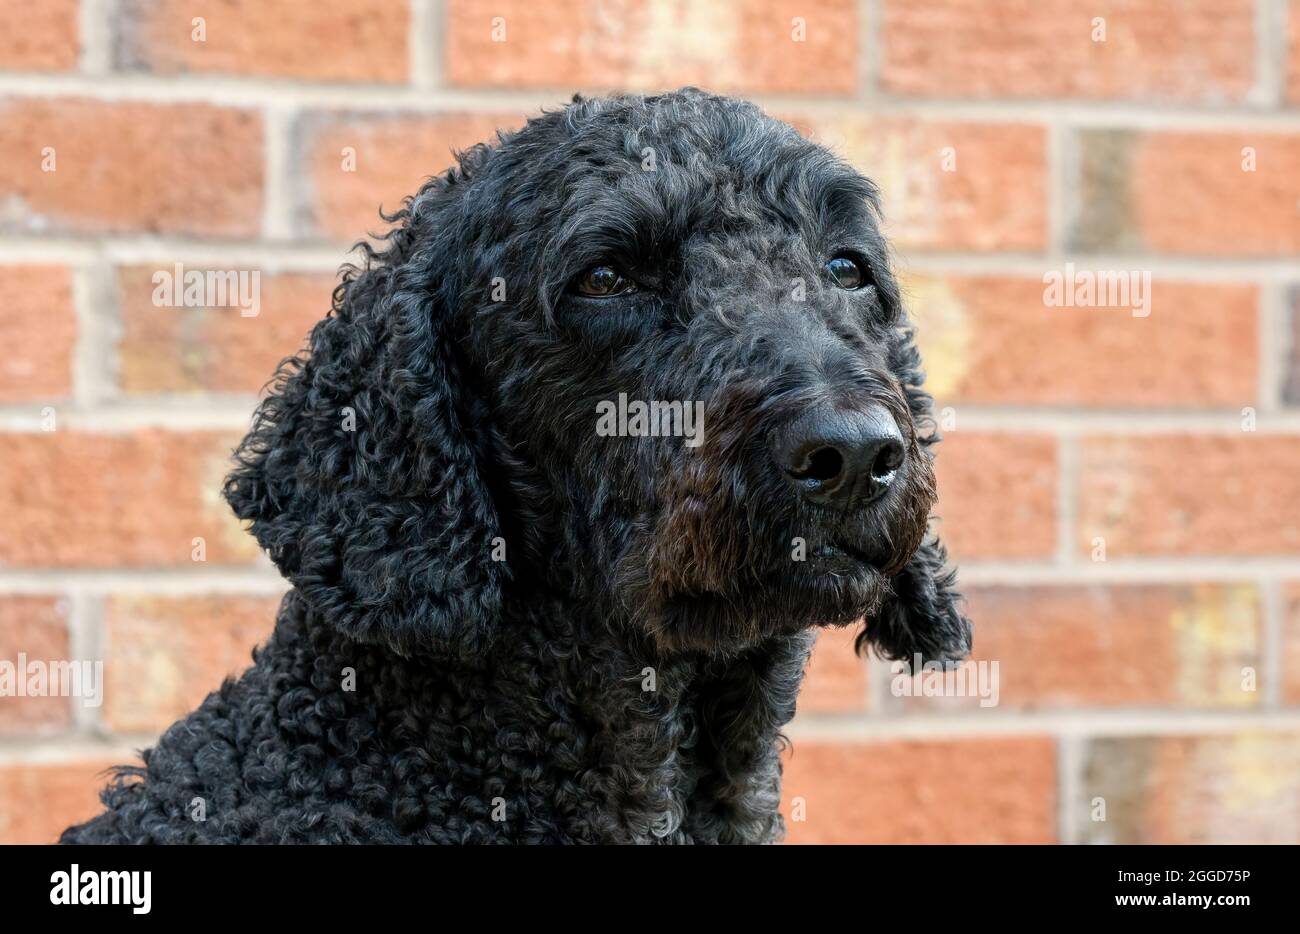 Nahaufnahme des Kopfes eines schwarzen Labradoodle-Hundes, der gegen eine Backsteinmauer abgebildet ist Stockfoto